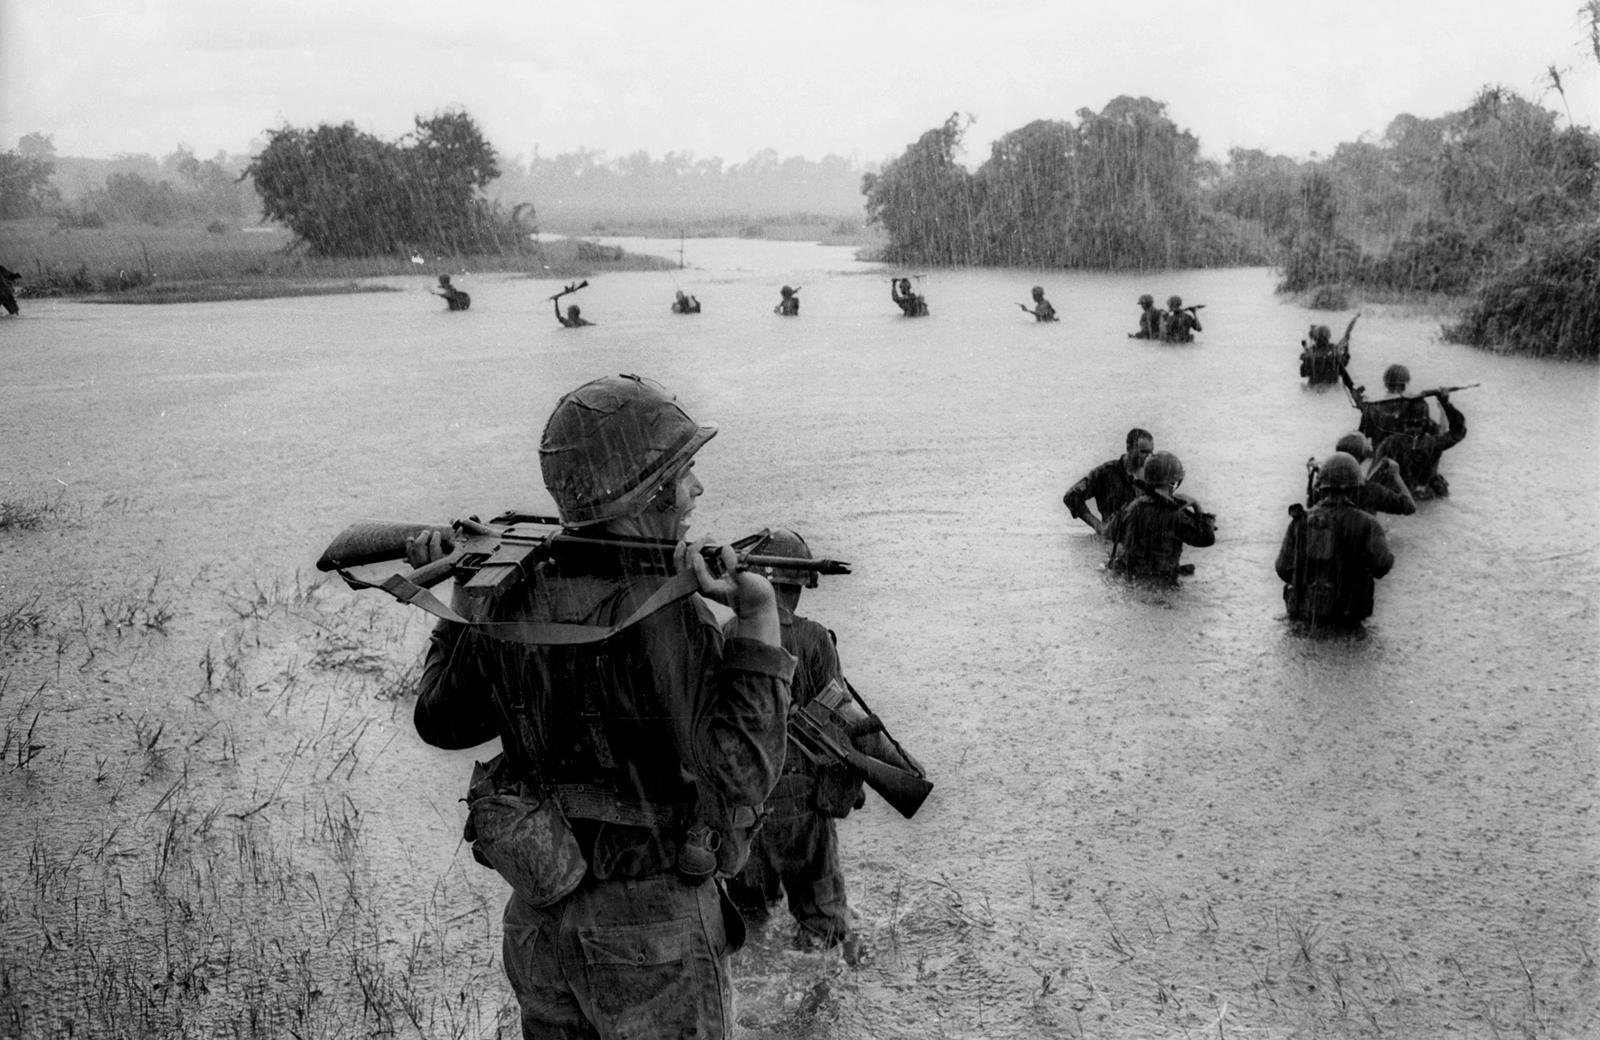 Guerra do Vietnam